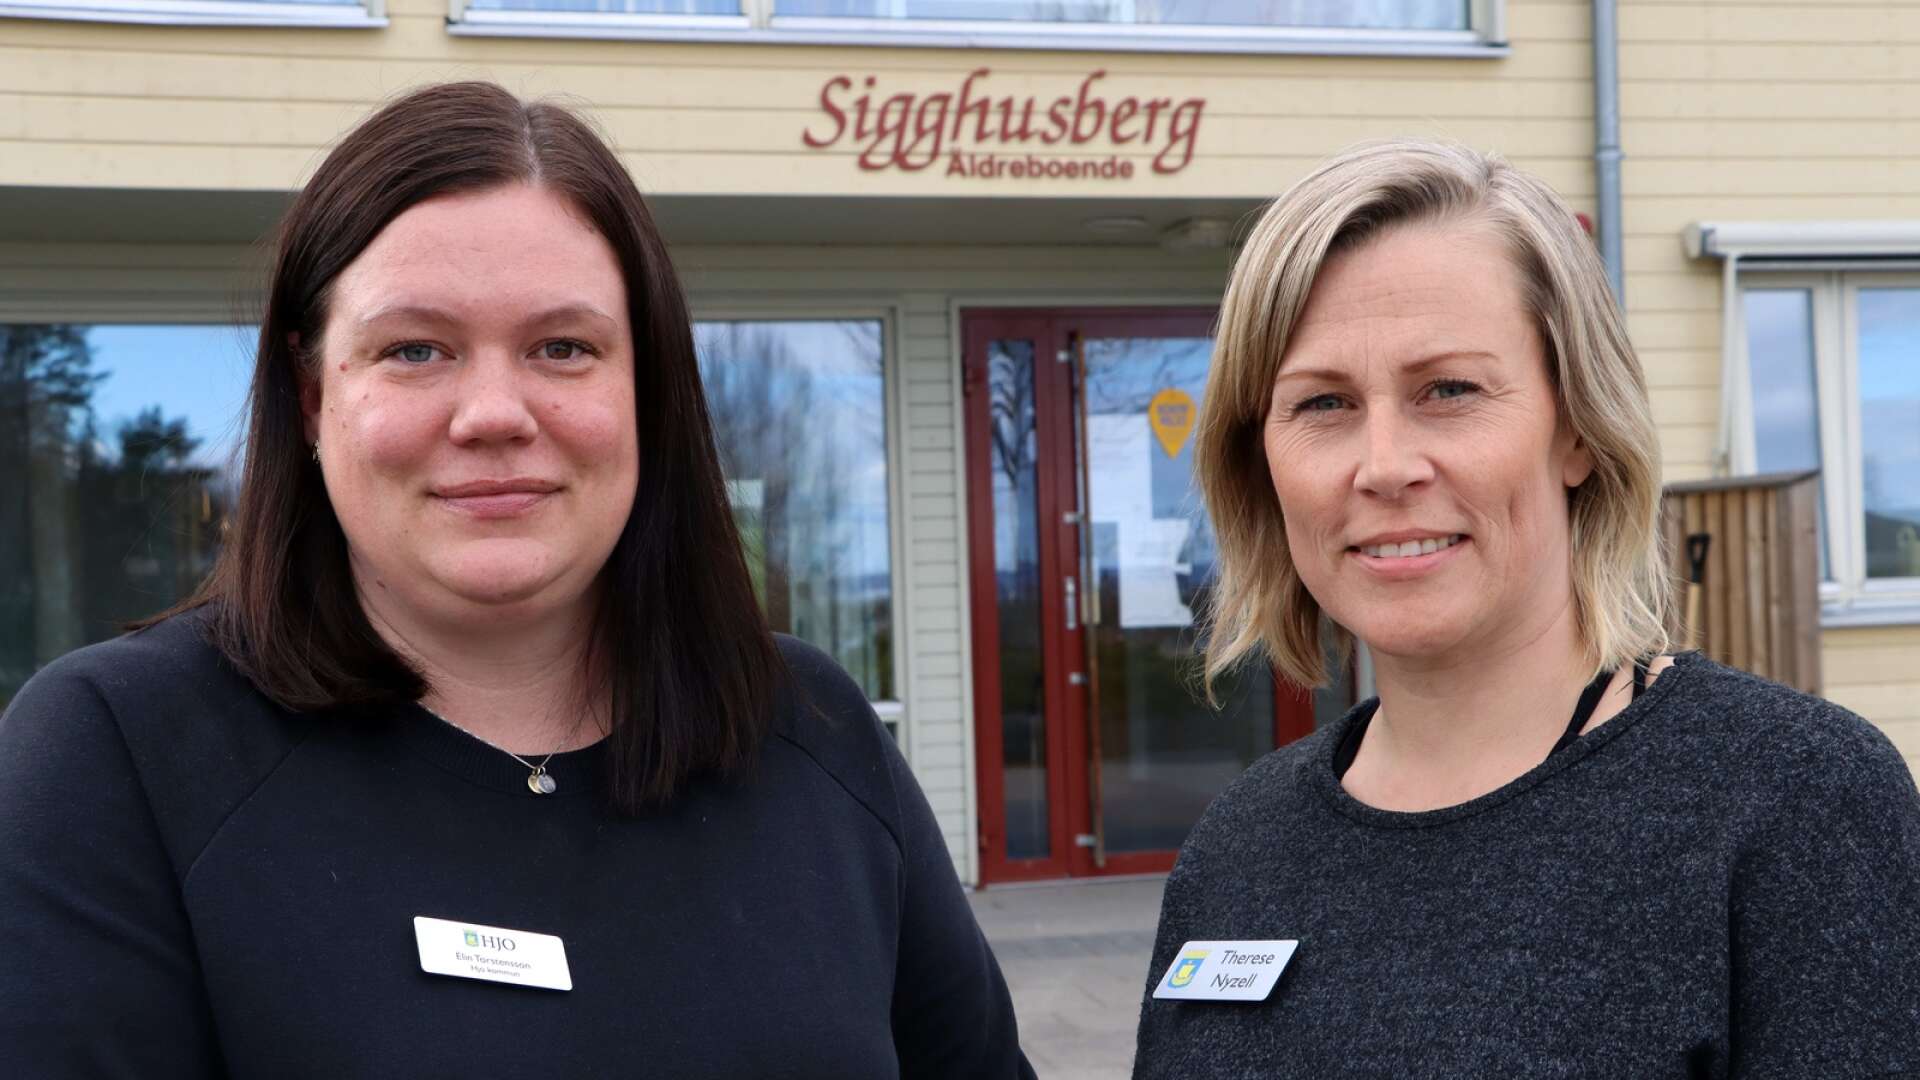 Elin Torstensson och Therese Nyzell utgör demensteamet i Hjo och har sitt kontor på Sigghusberg. 